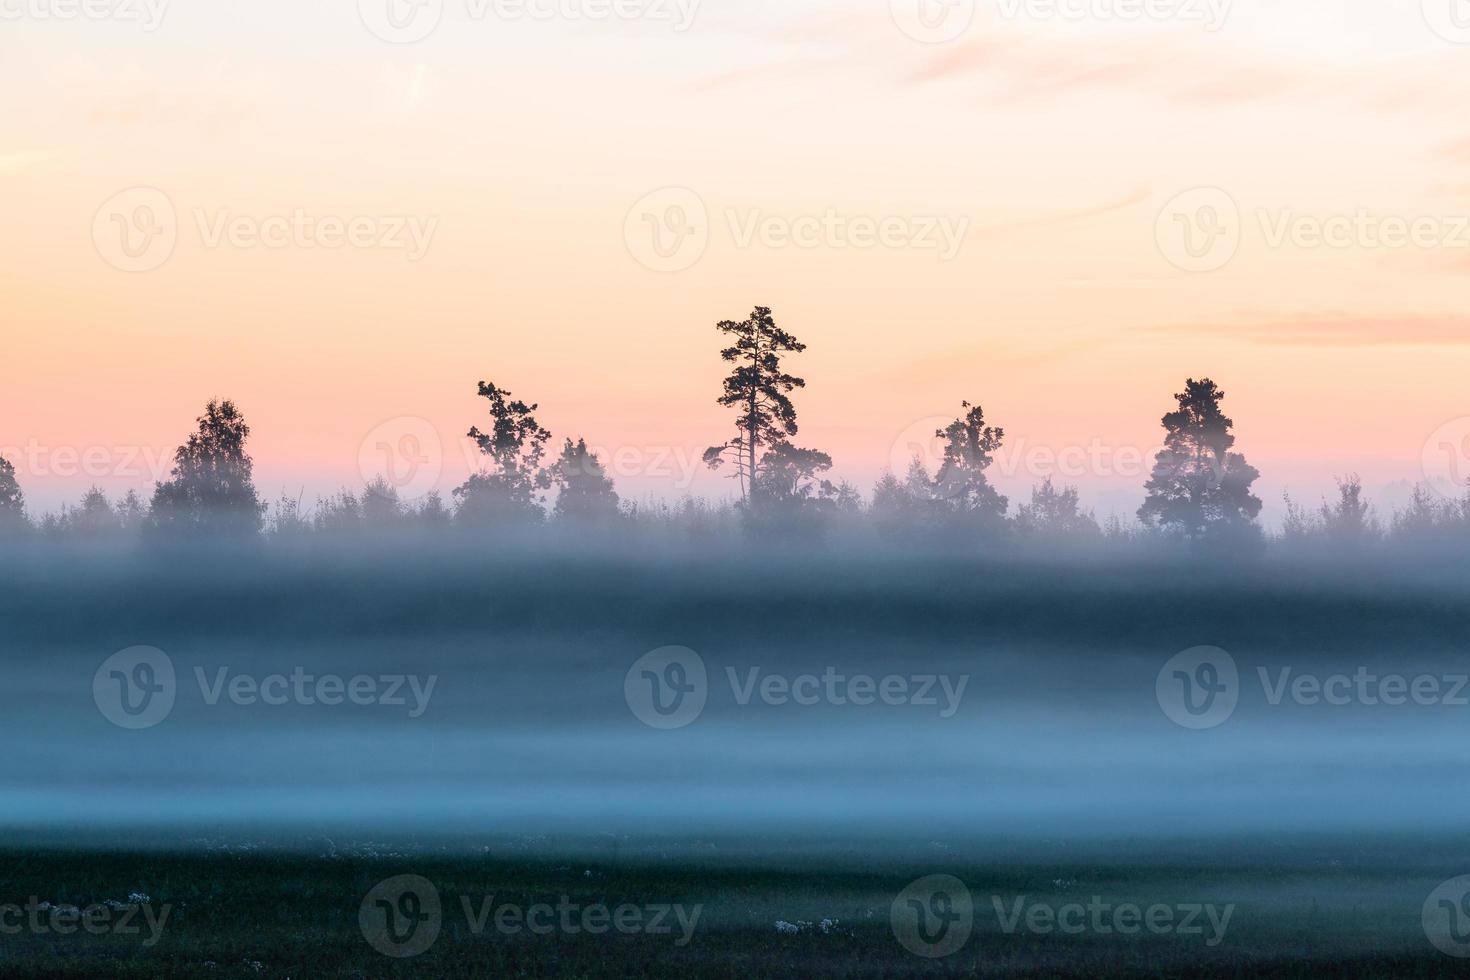 paisajes de verano de Letonia foto